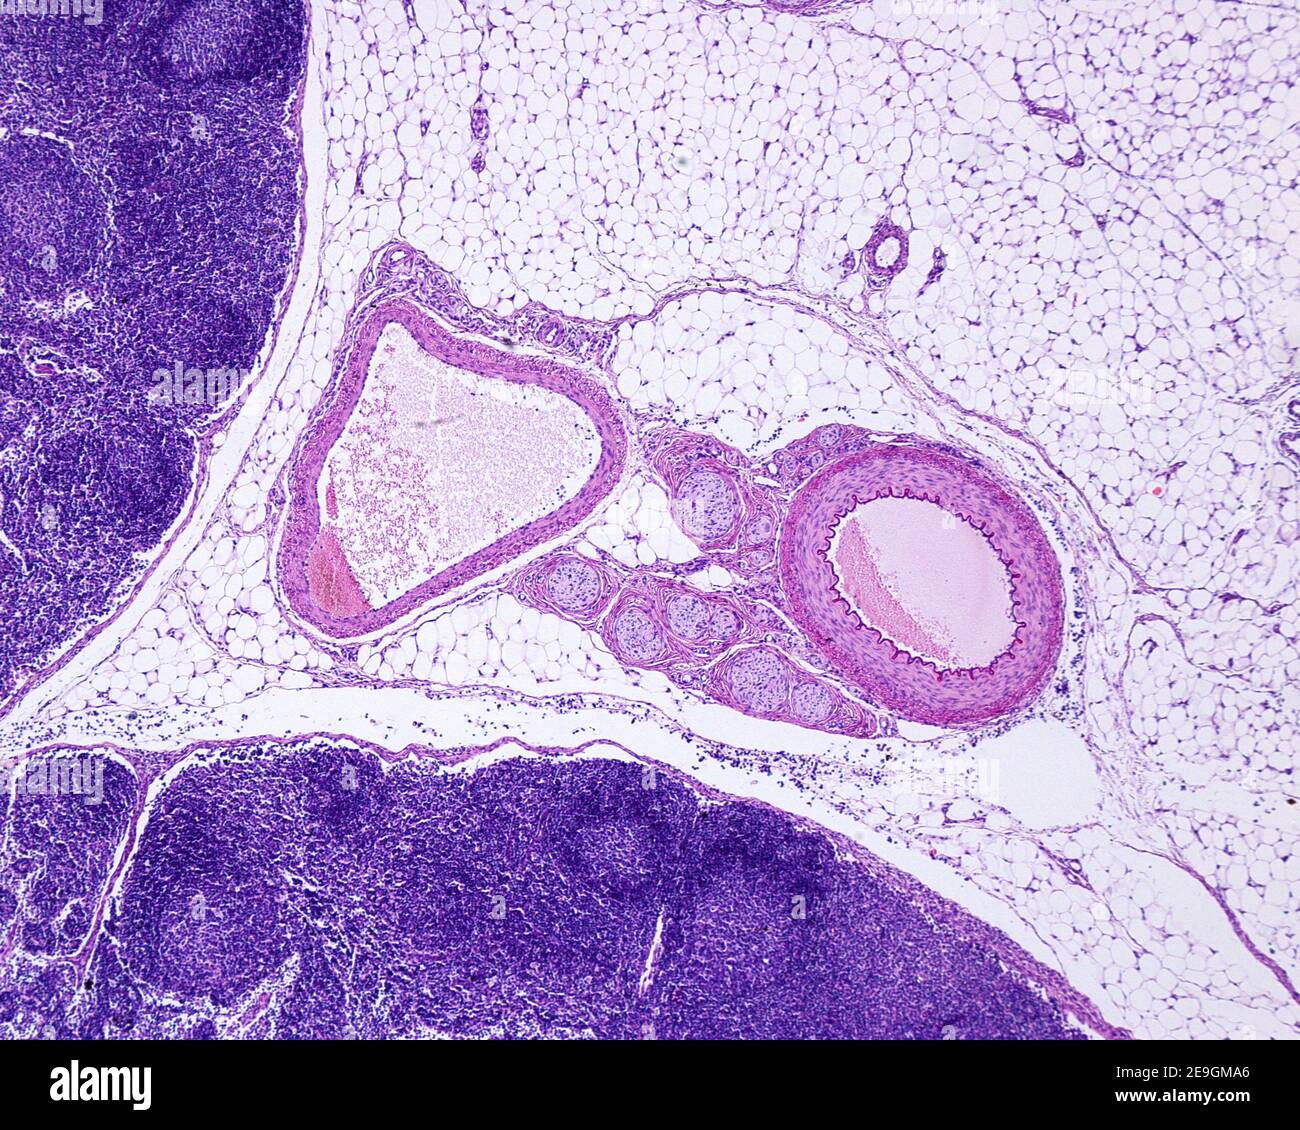 Muskelarterie, Vene und Nervenbündel umgeben von Fettgewebe, in der Nähe eines Lymphknotens. Die Arterie (rechts) hat eine dickere Wand und einen kleineren Durchmesser Stockfoto